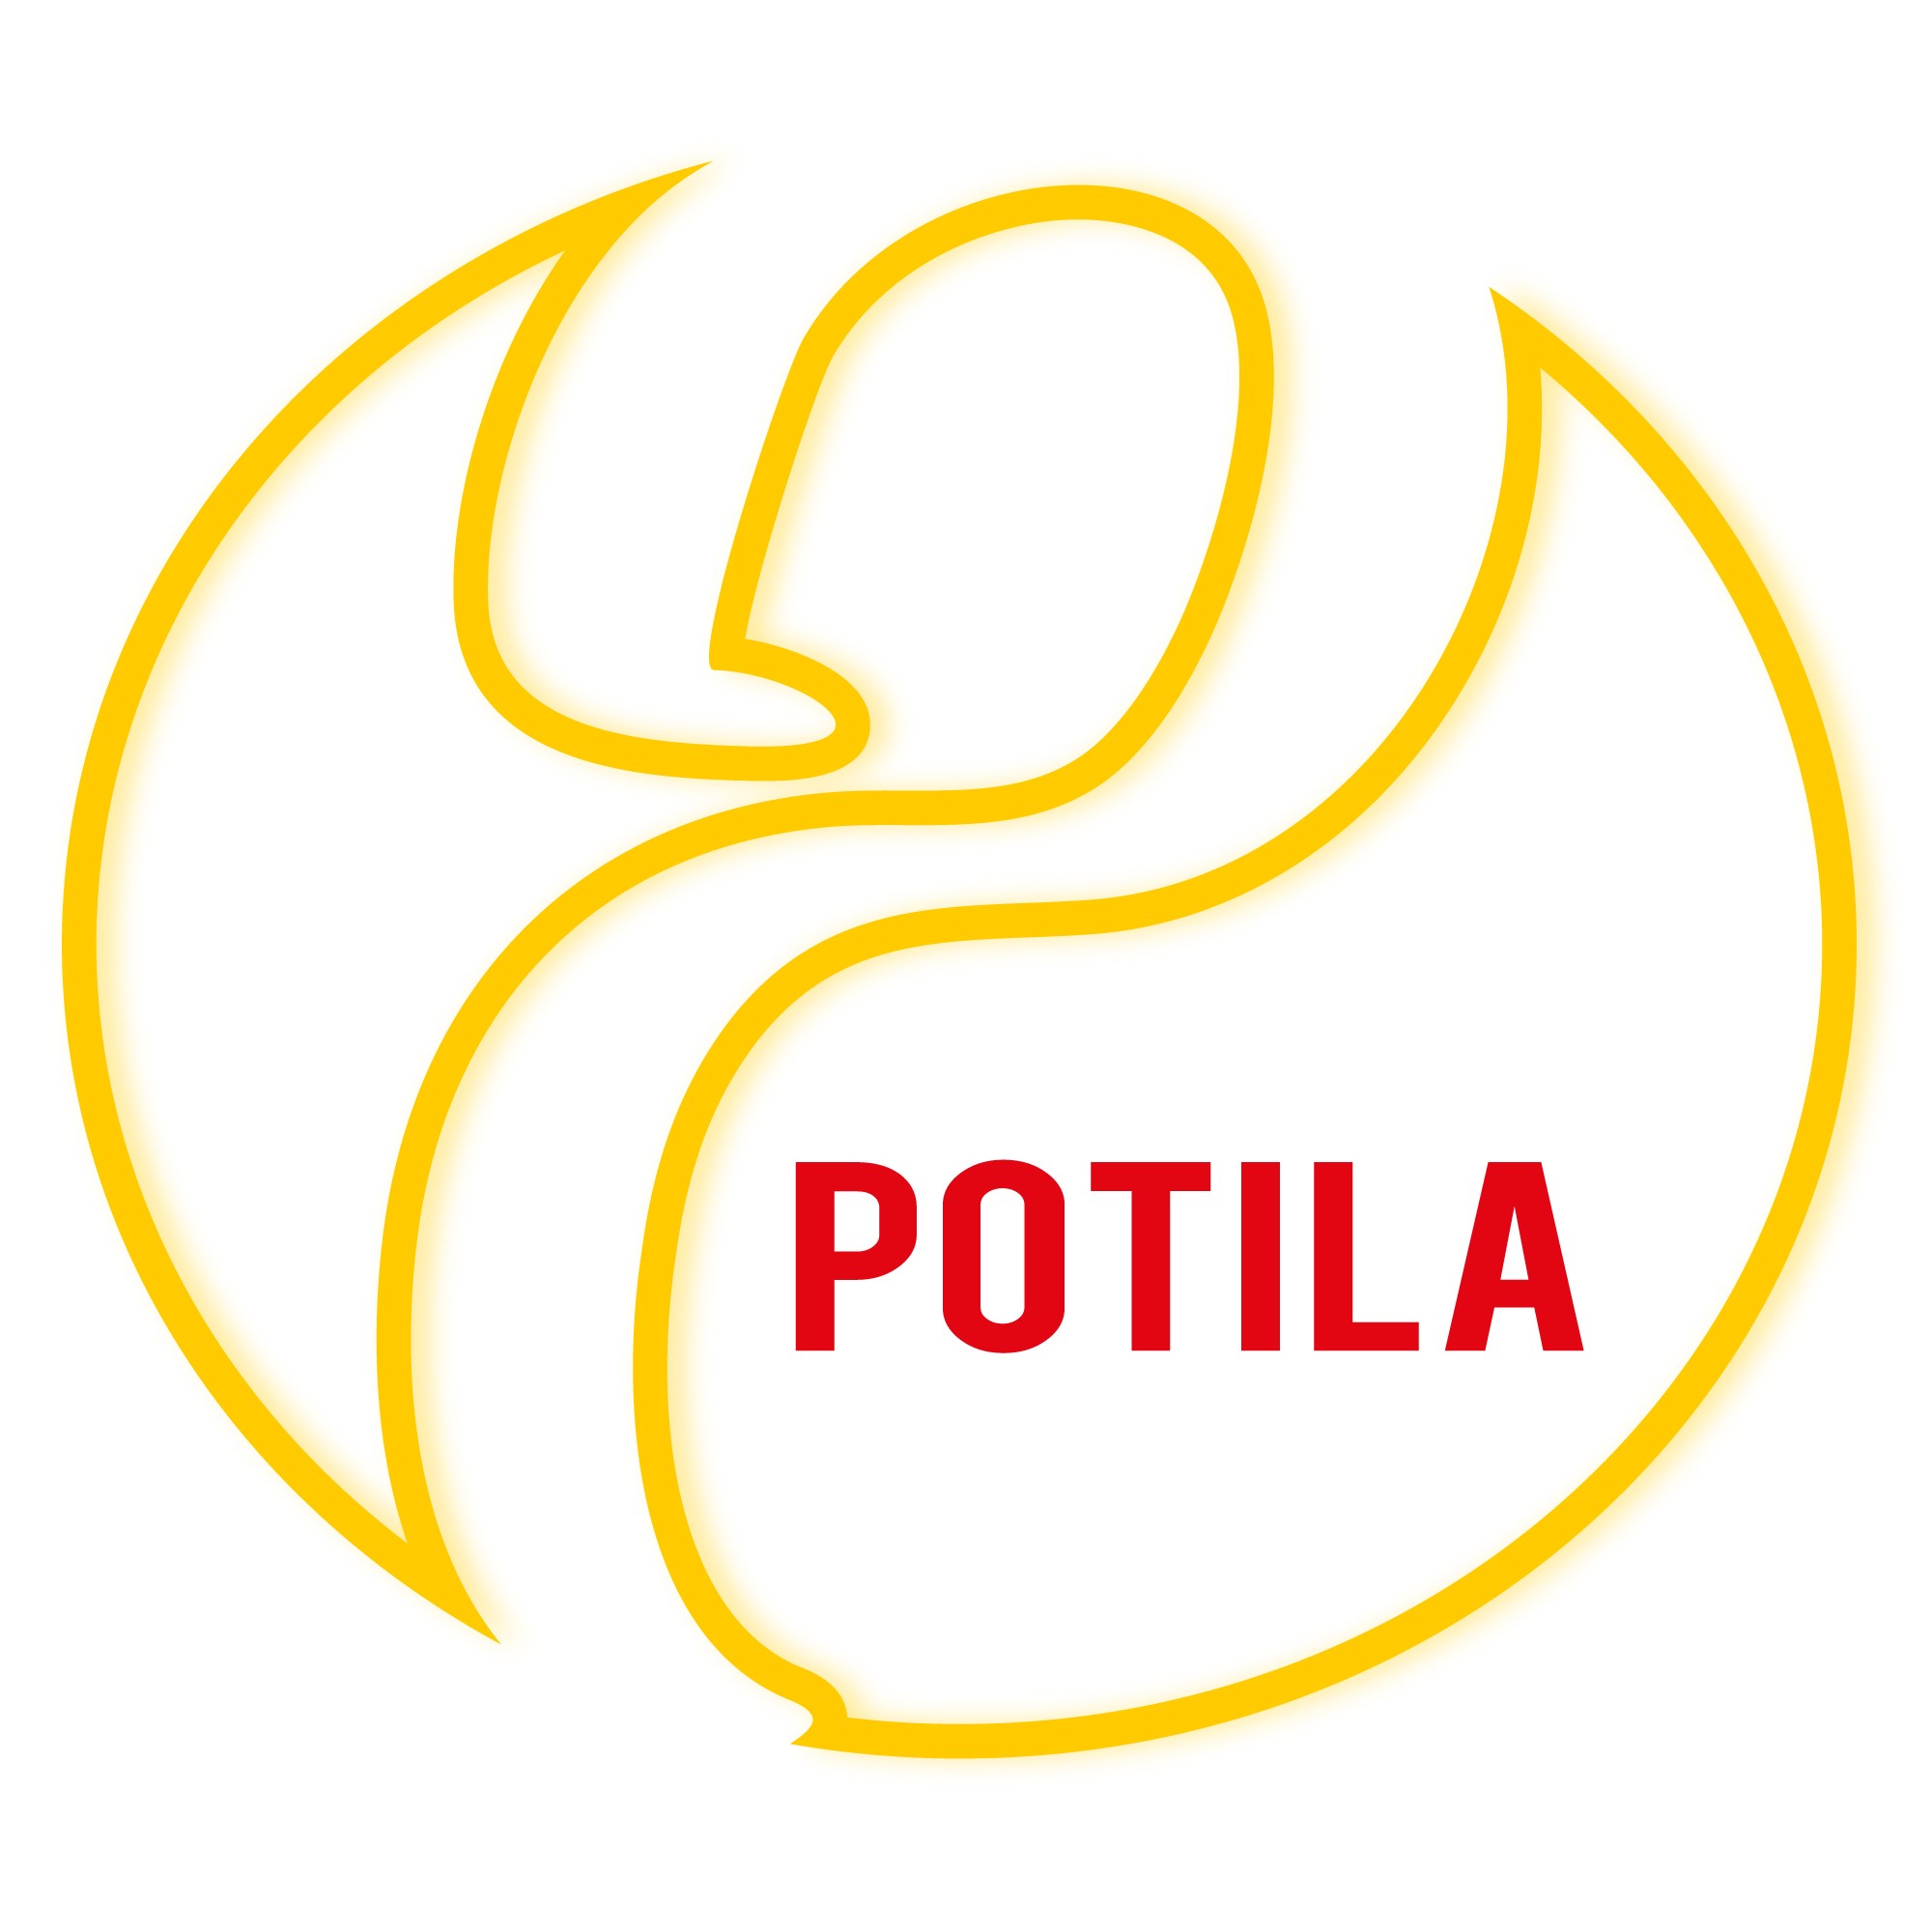 Potila logo